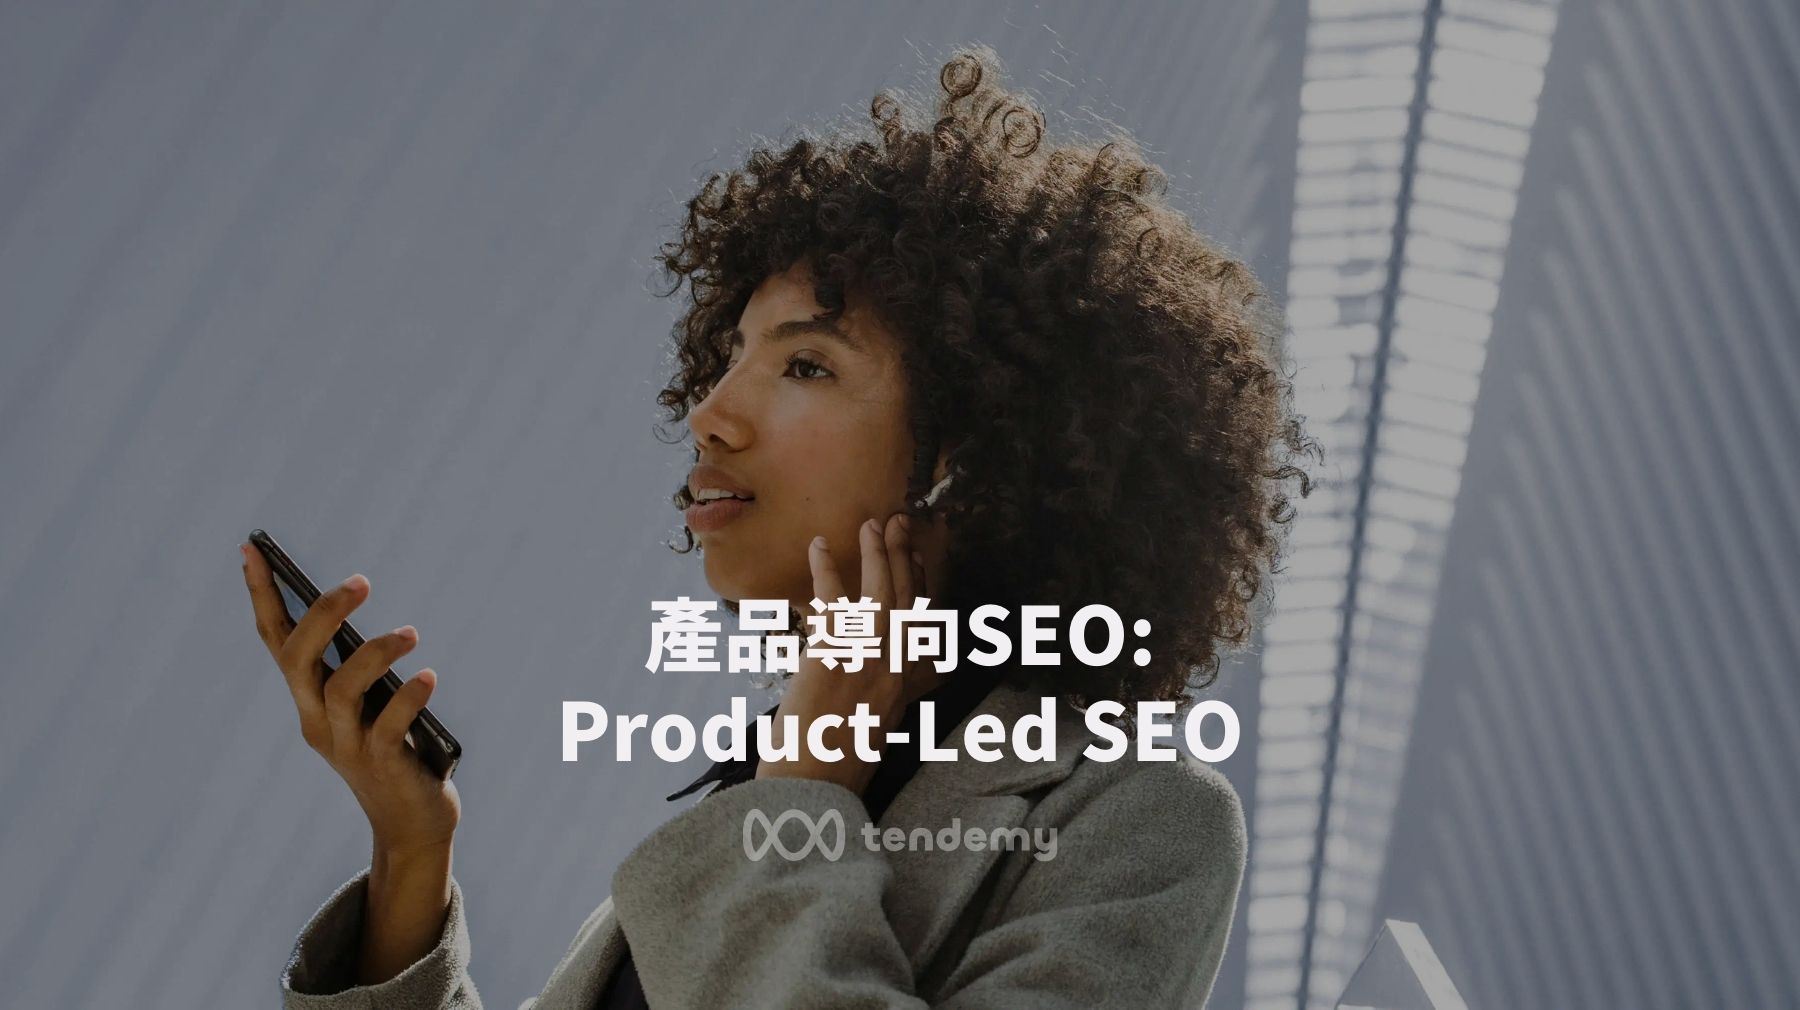 產品導向SEO (2): Product-Led SEO